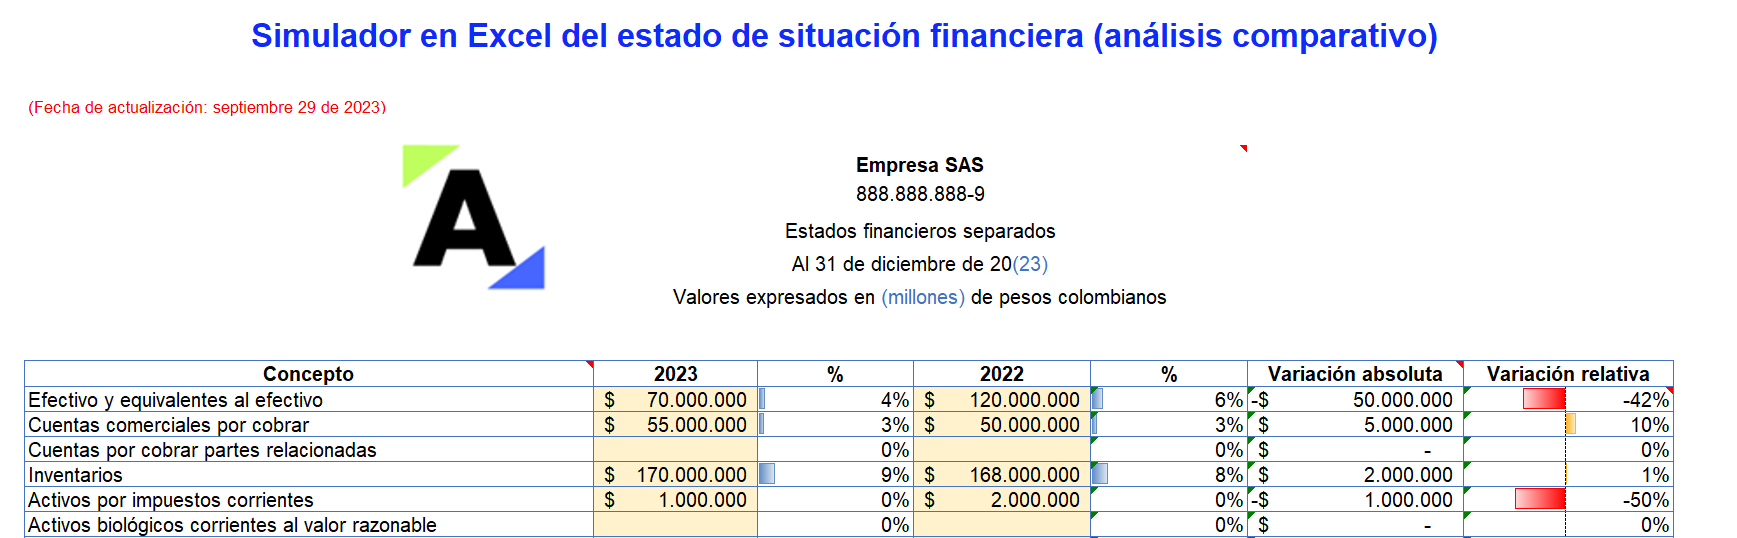 Simulador en Excel del estado de situación financiera (análisis comparativo)